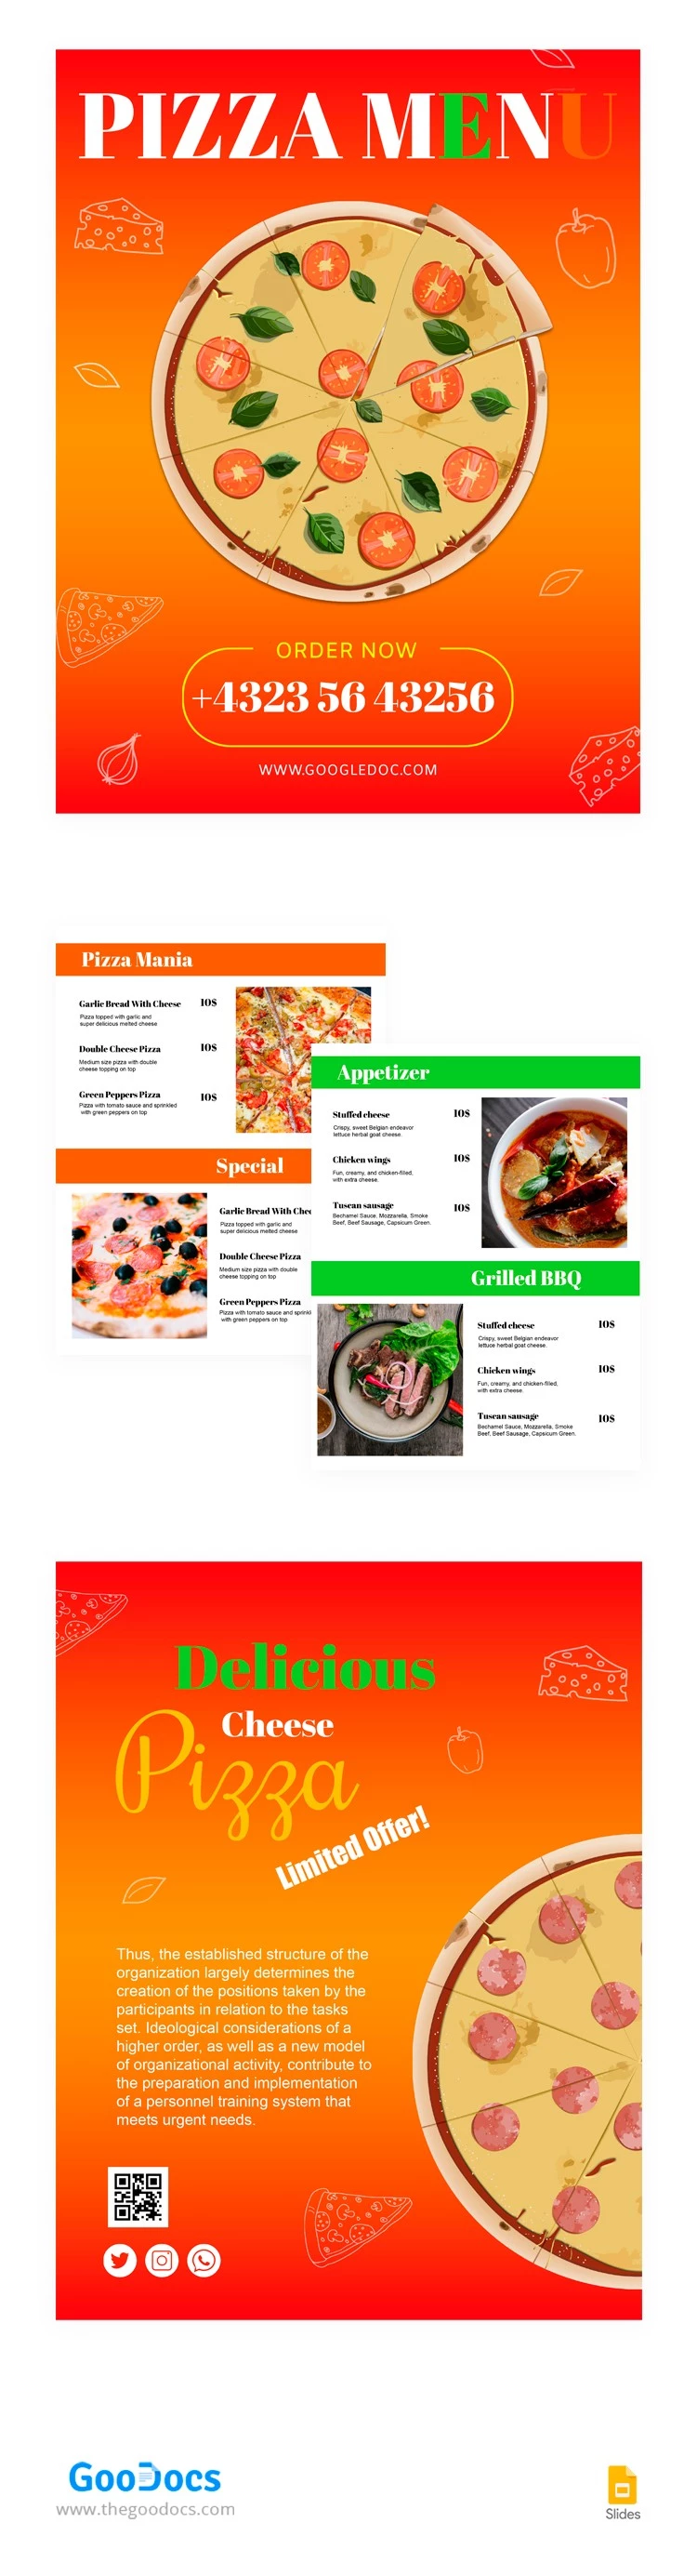 意大利比萨饭店菜单 - free Google Docs Template - 10063587